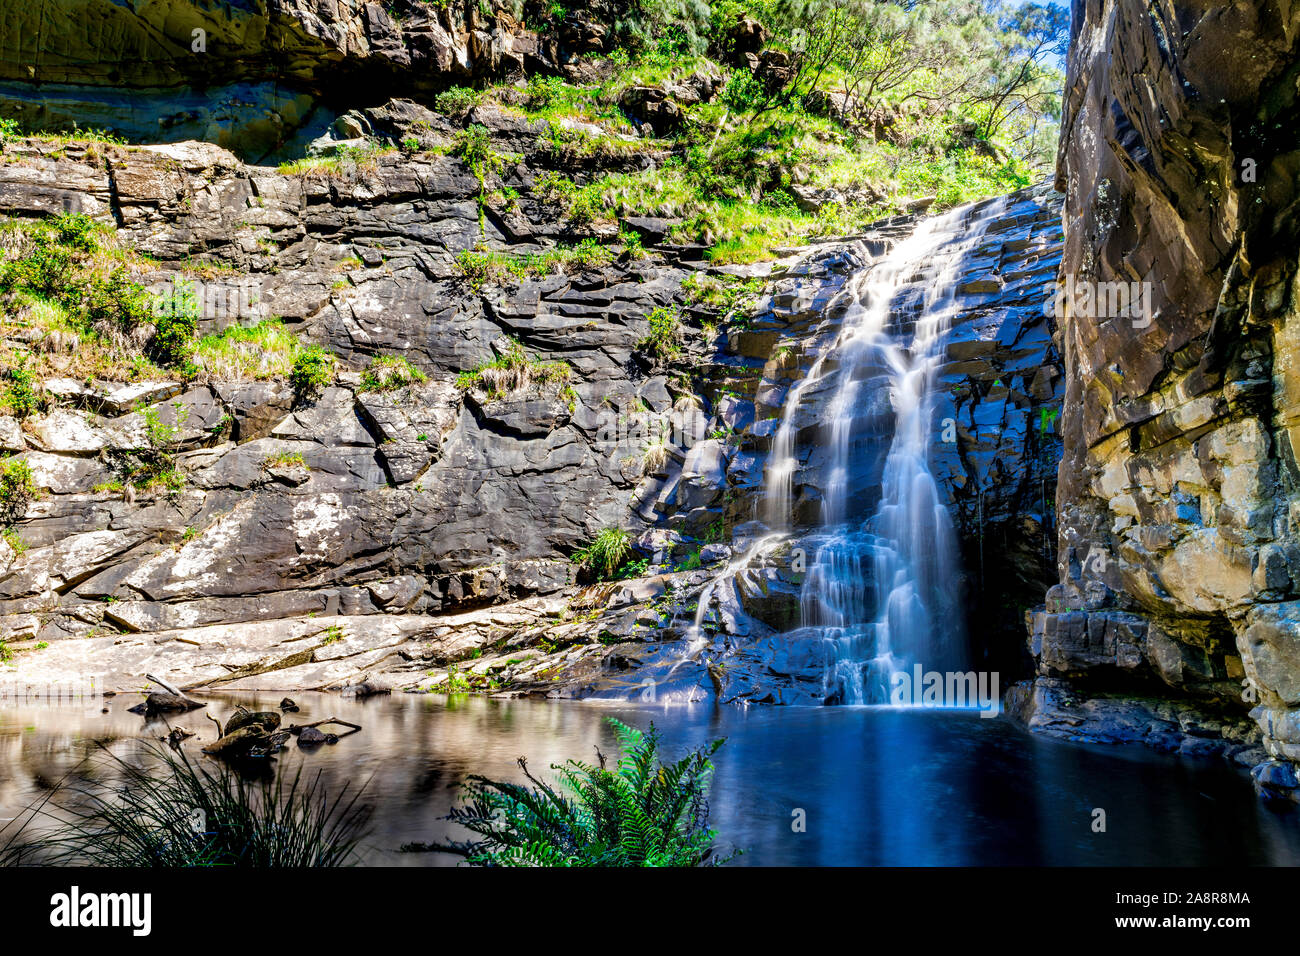 Sheoak Falls dans le Grand Parc National d'Otway, près de Lorne, Victoria, Australie. Banque D'Images